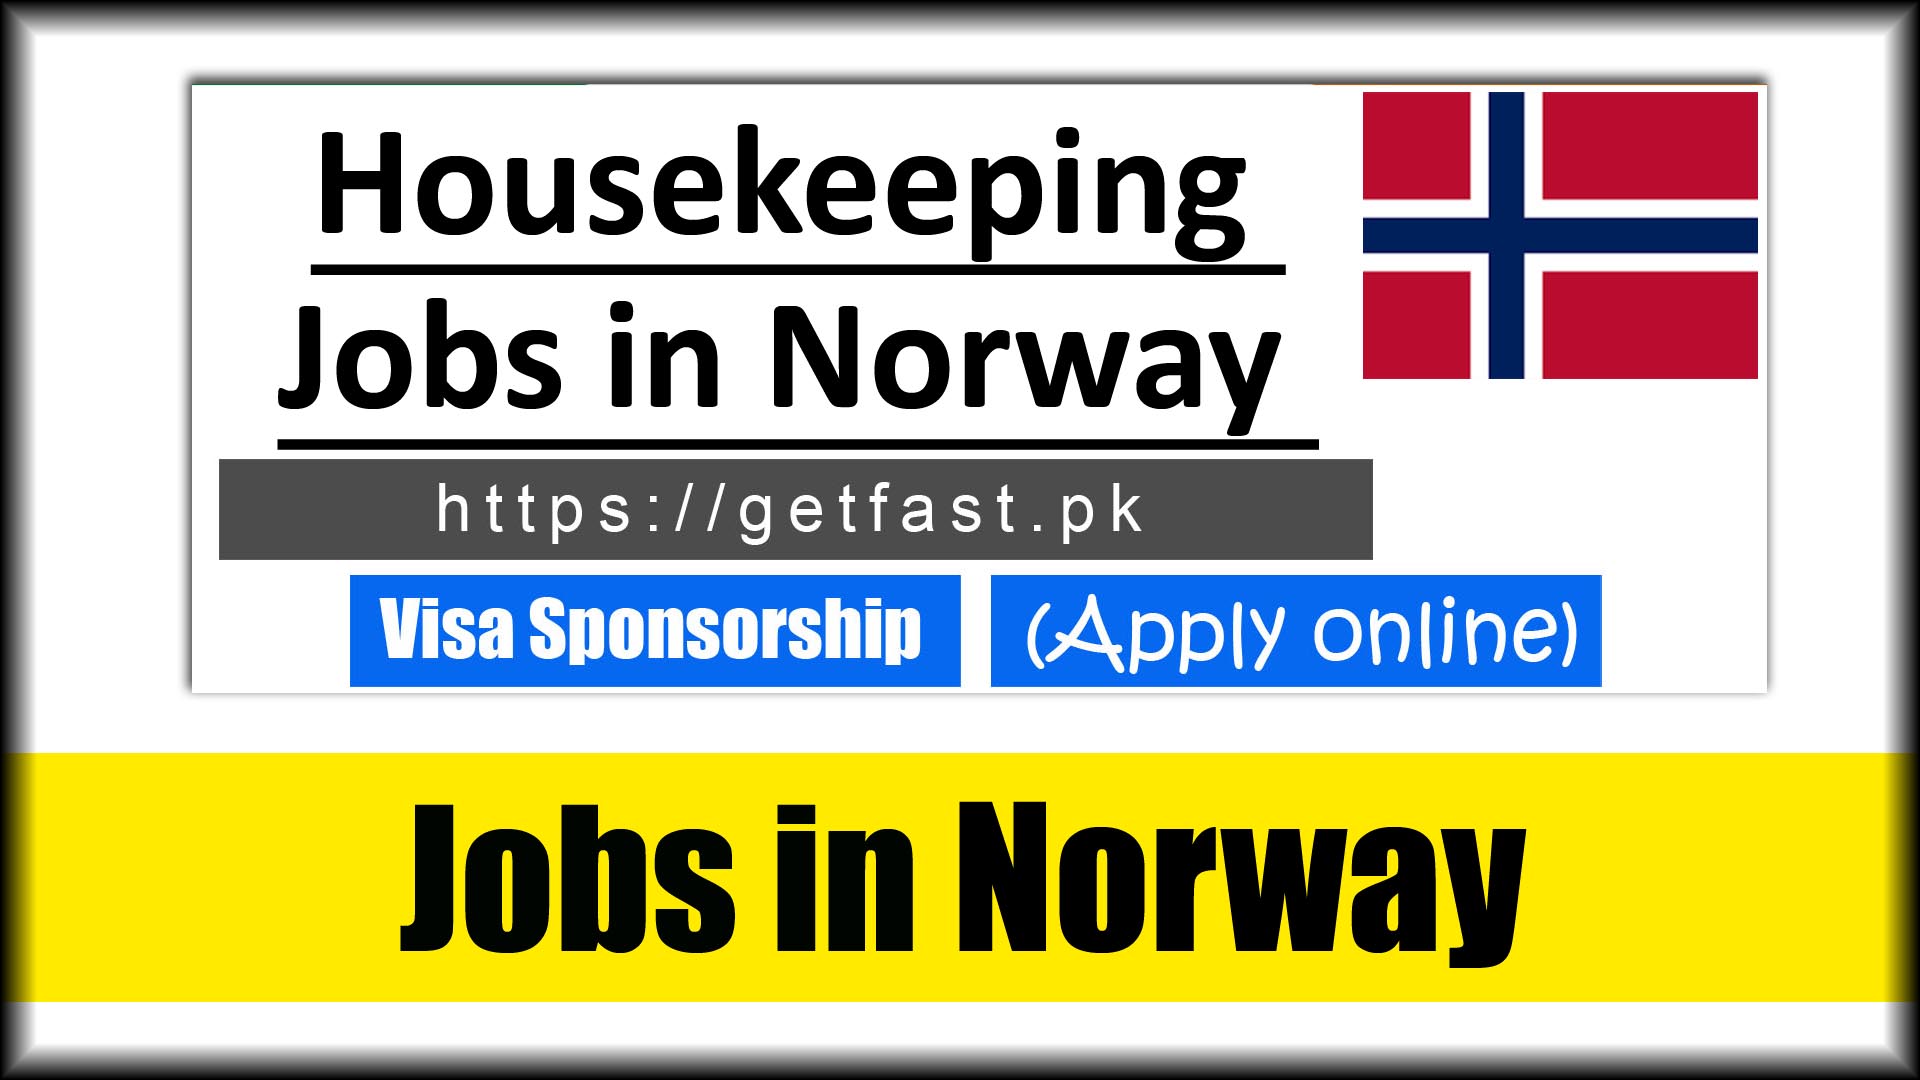 Housekeeping Jobs in Norway with visa sponsorship 2023 - Apply Online